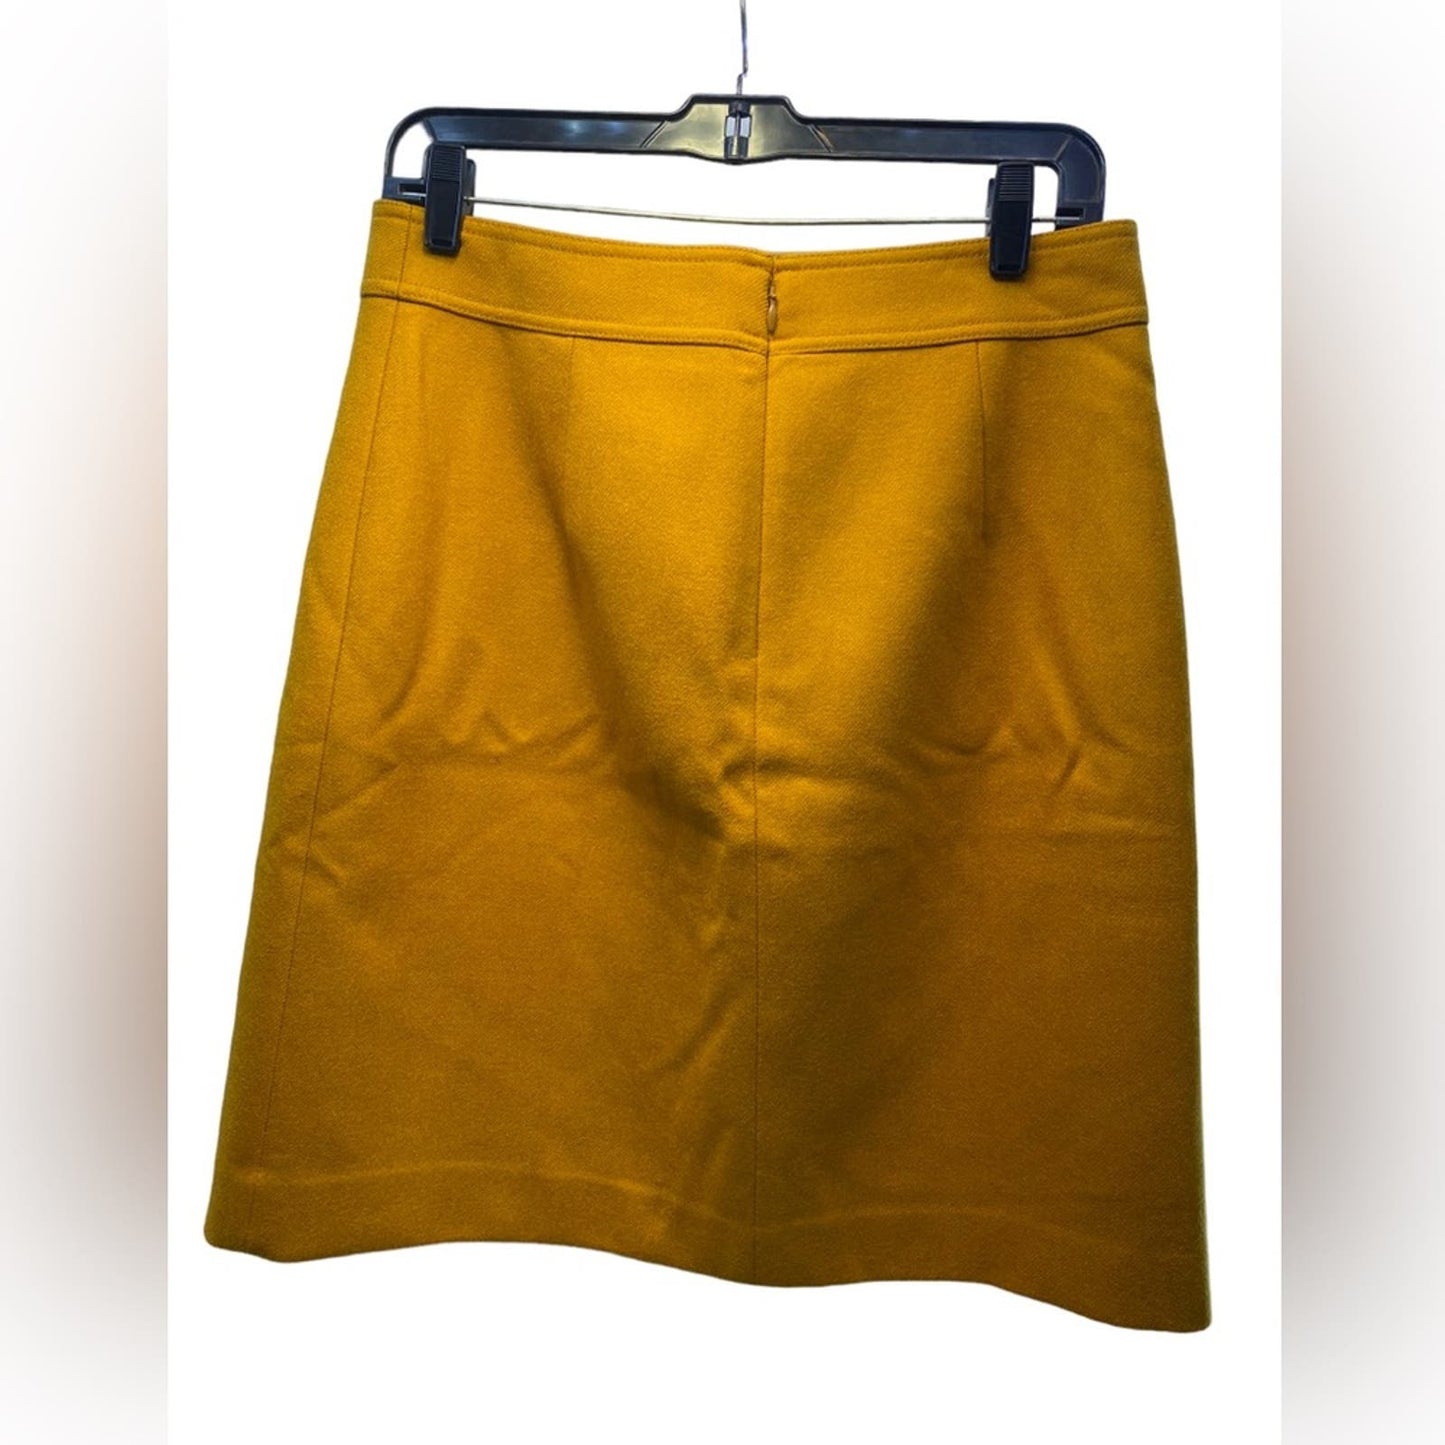 J. Crew Mustard Wool Pencil Skirt. Size 8T